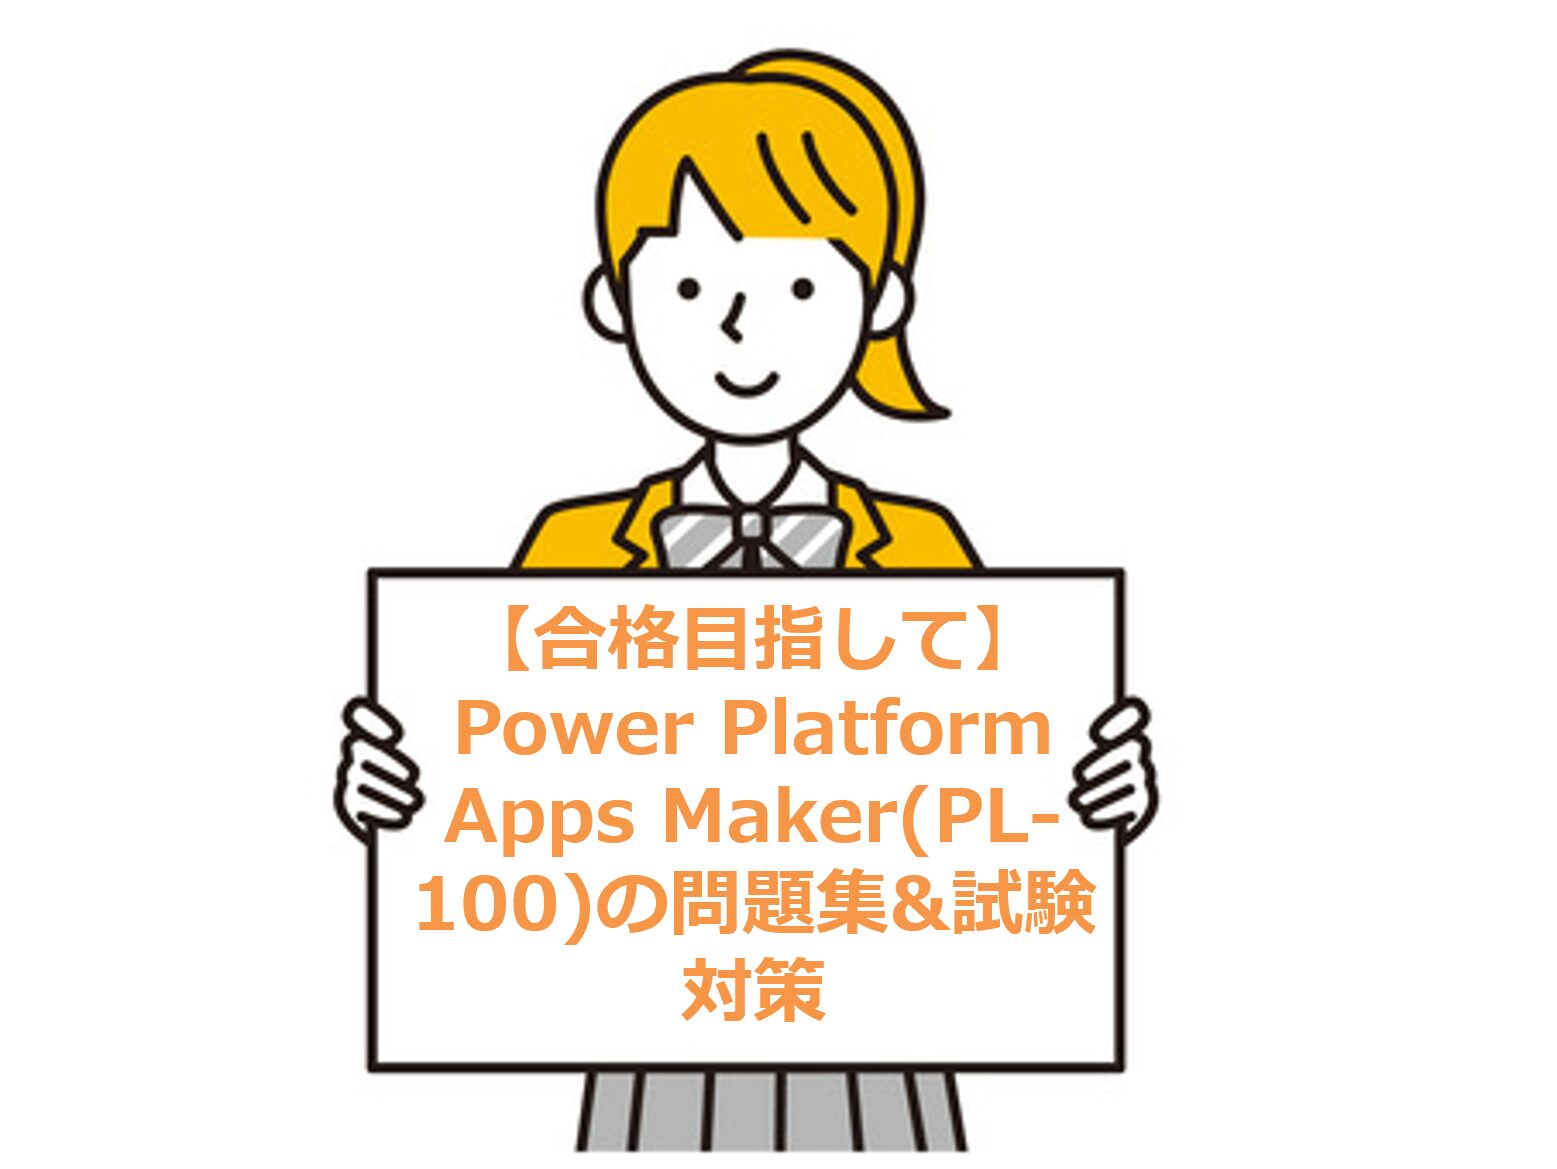 【合格目指して】Power Platform Apps Maker(PL-100)の問題集&試験対策